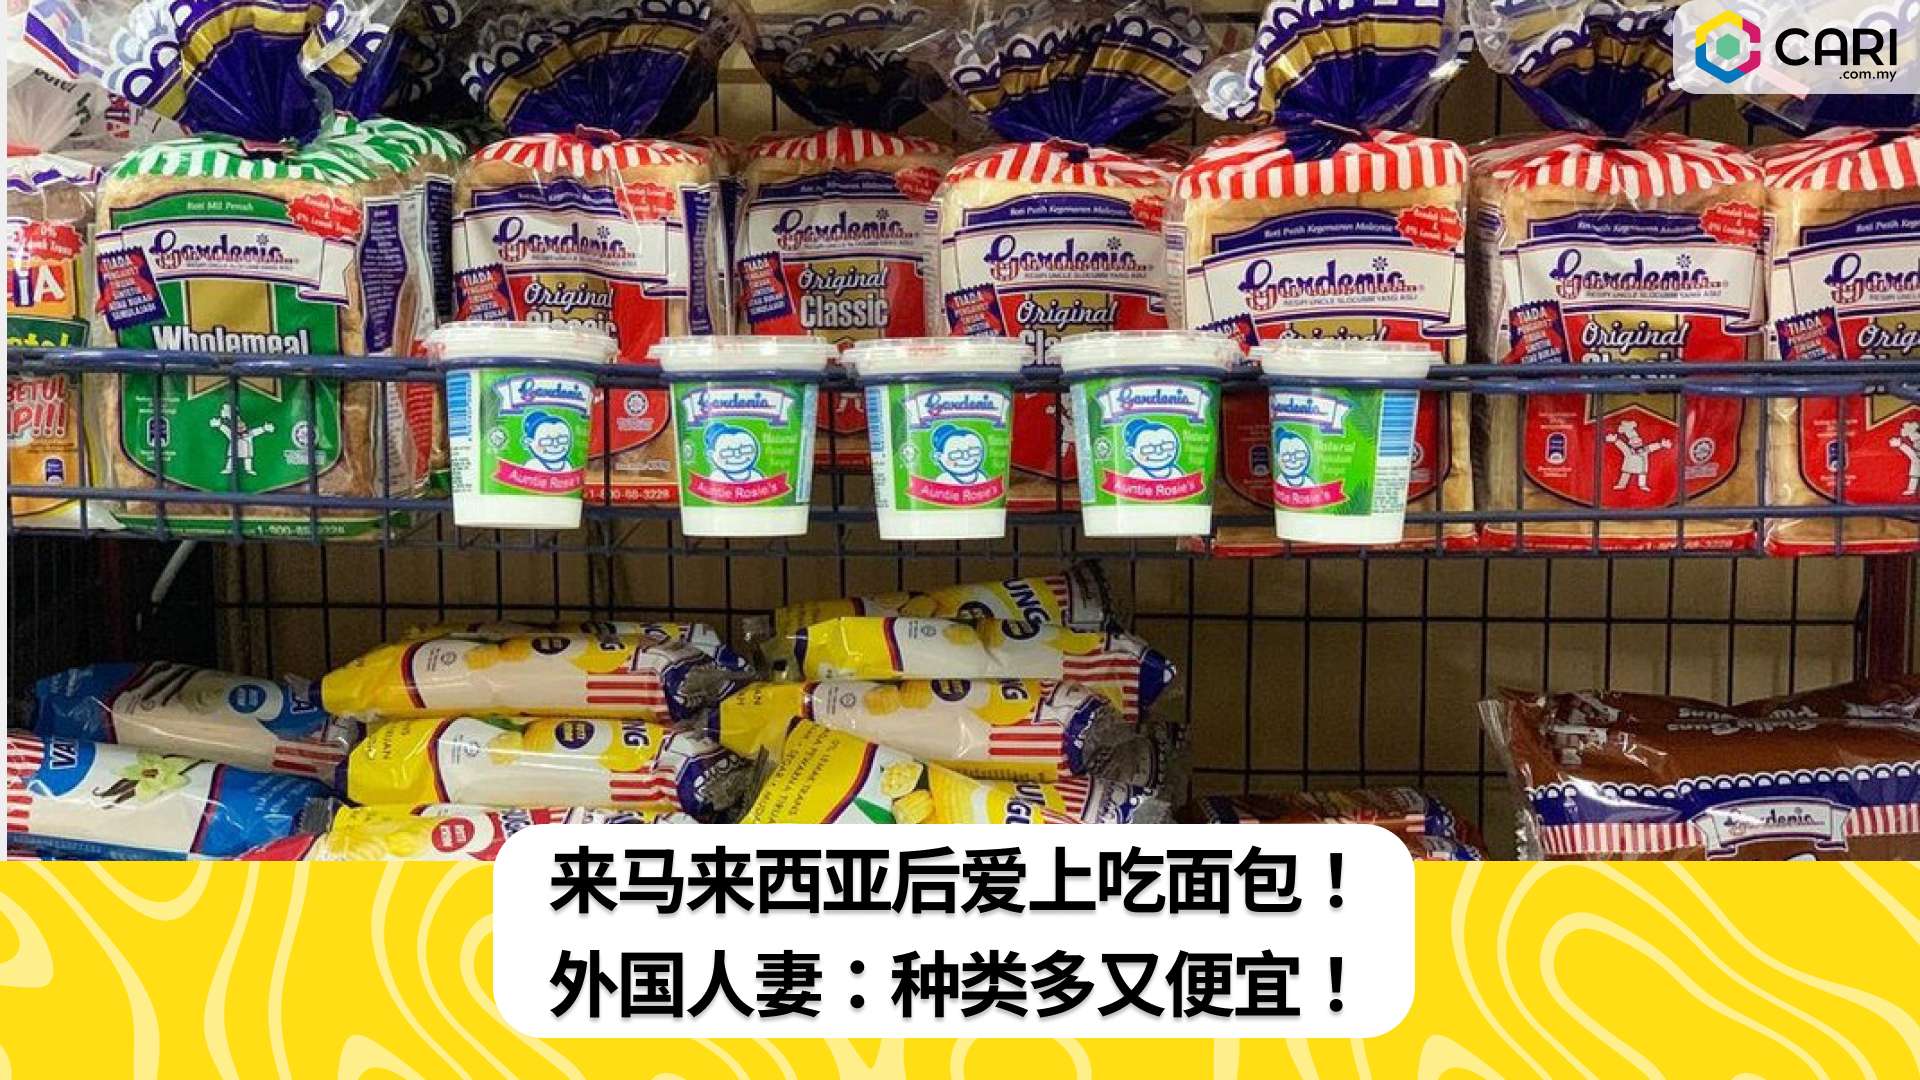 来马来西亚后爱上吃面包！ 外国人妻：种类多又便宜！